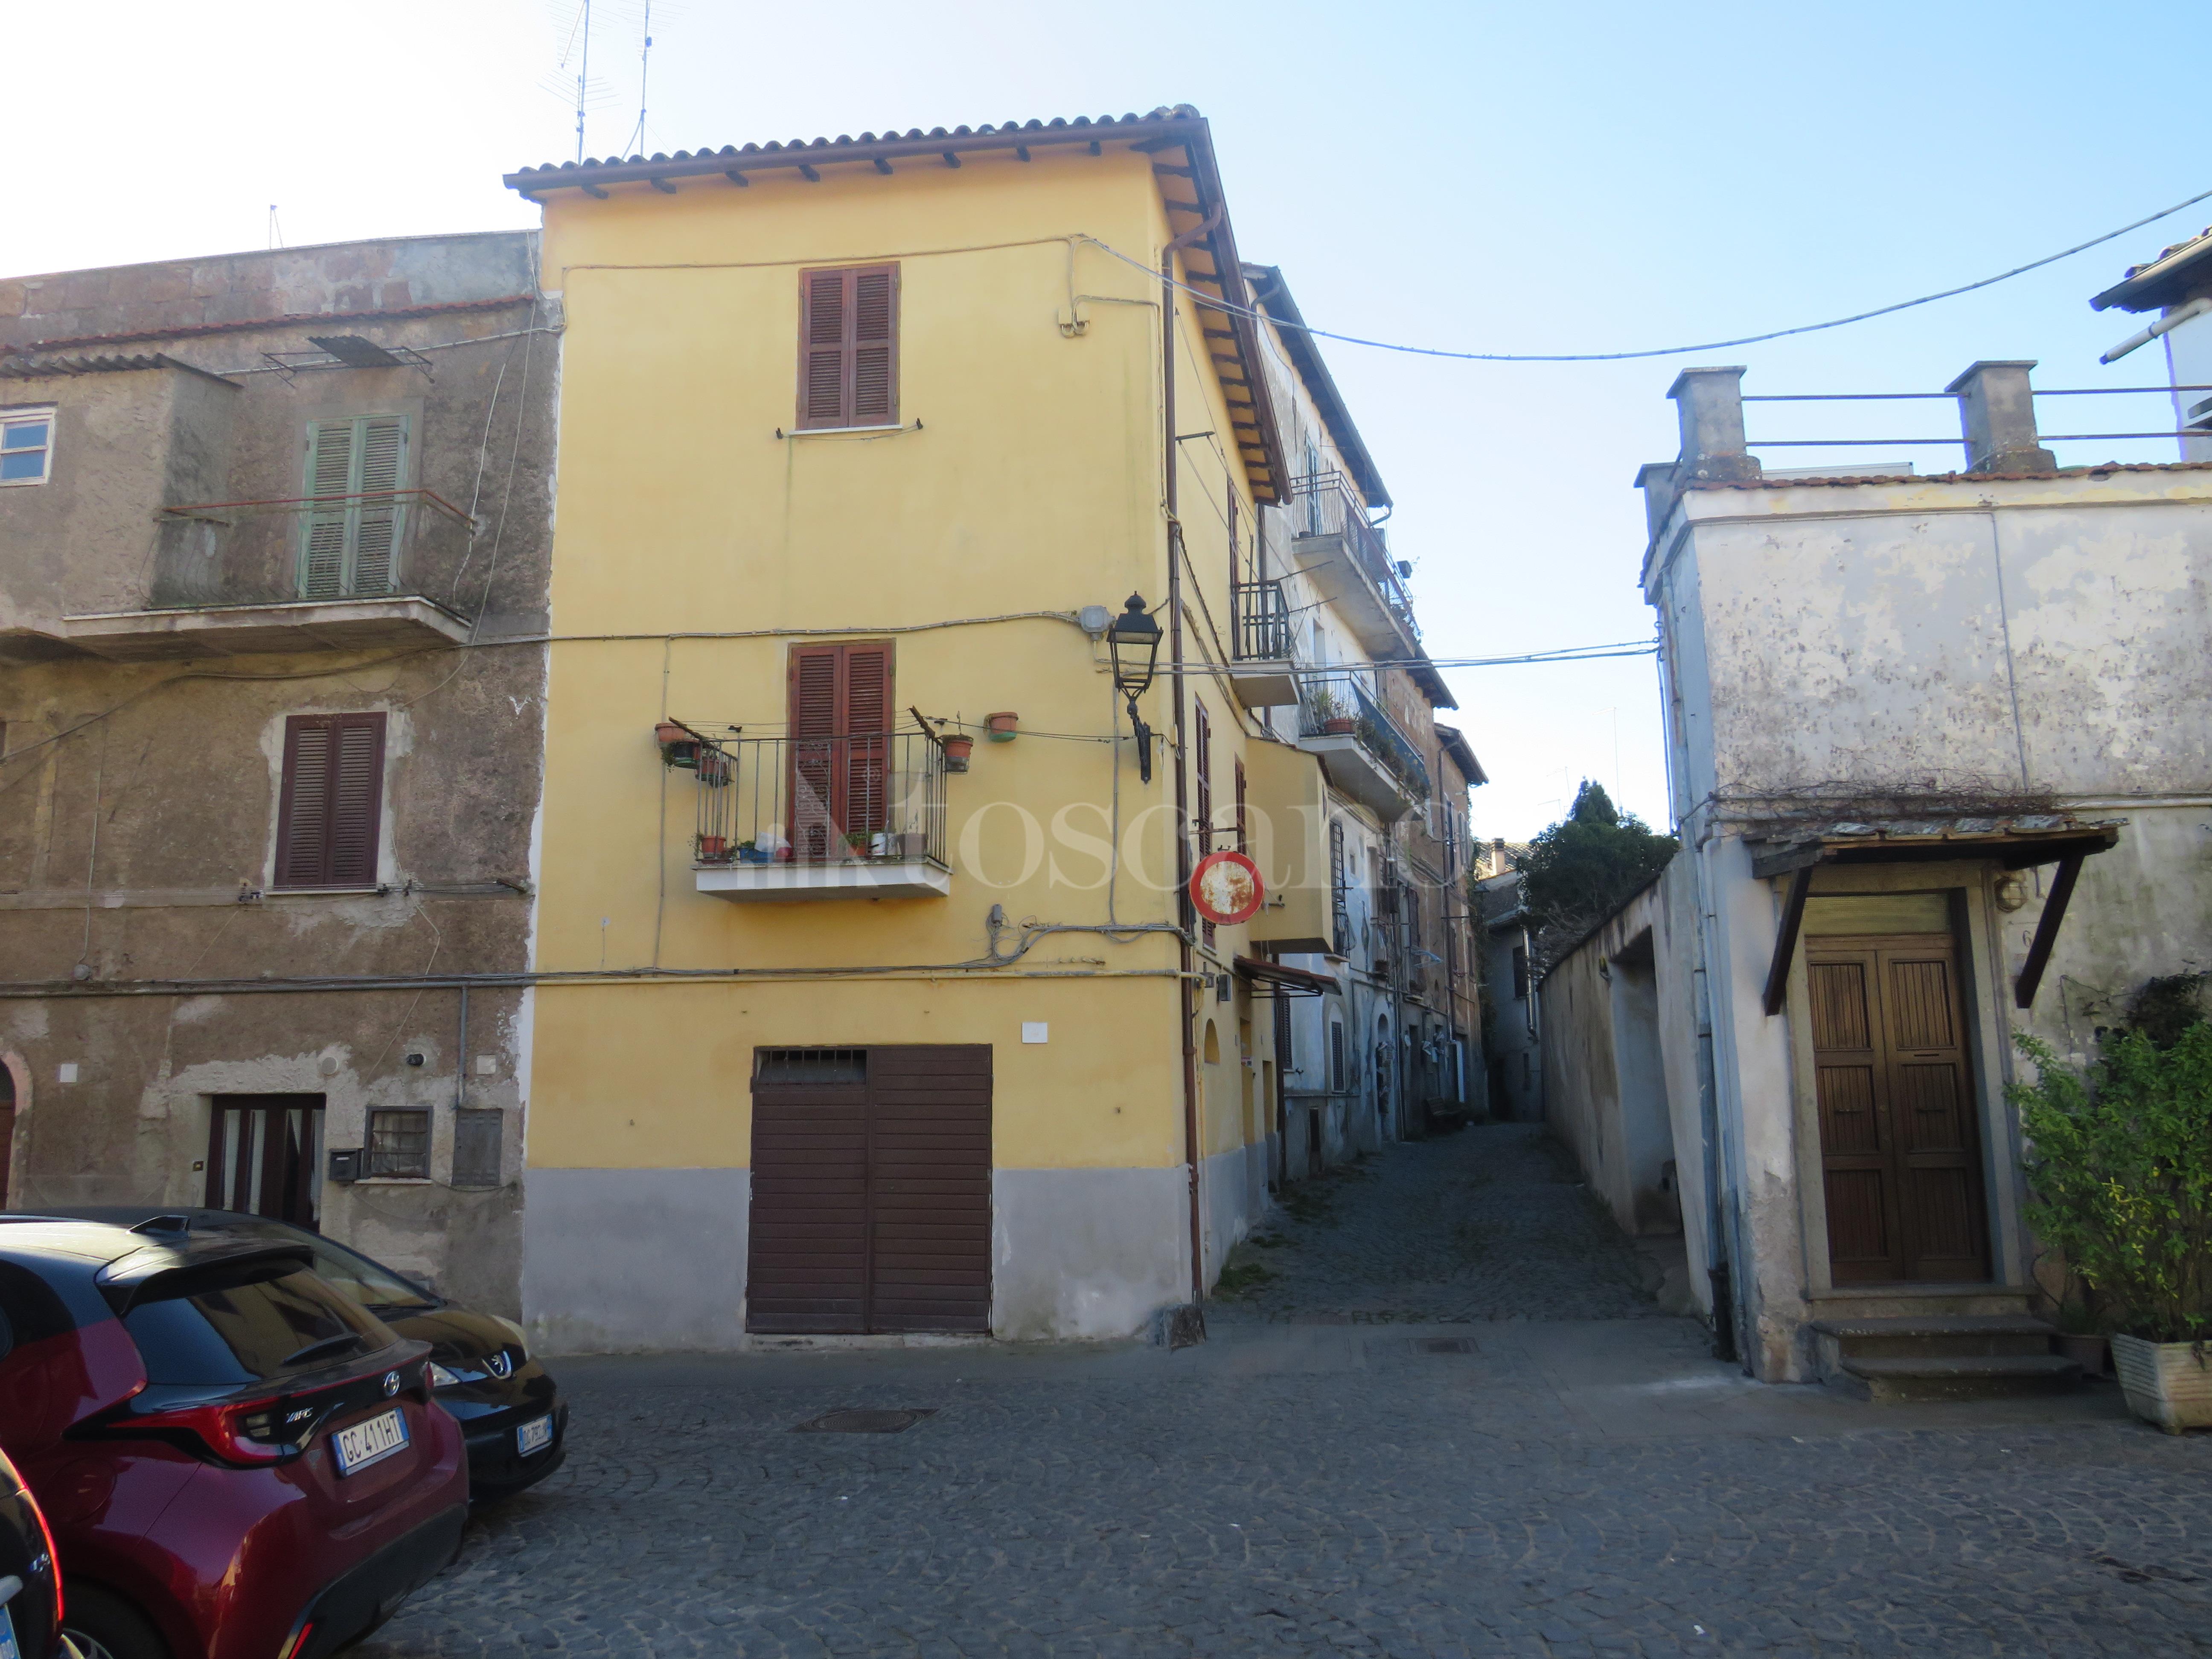 Casa a Nepi in Vicolo Taddeucci 13